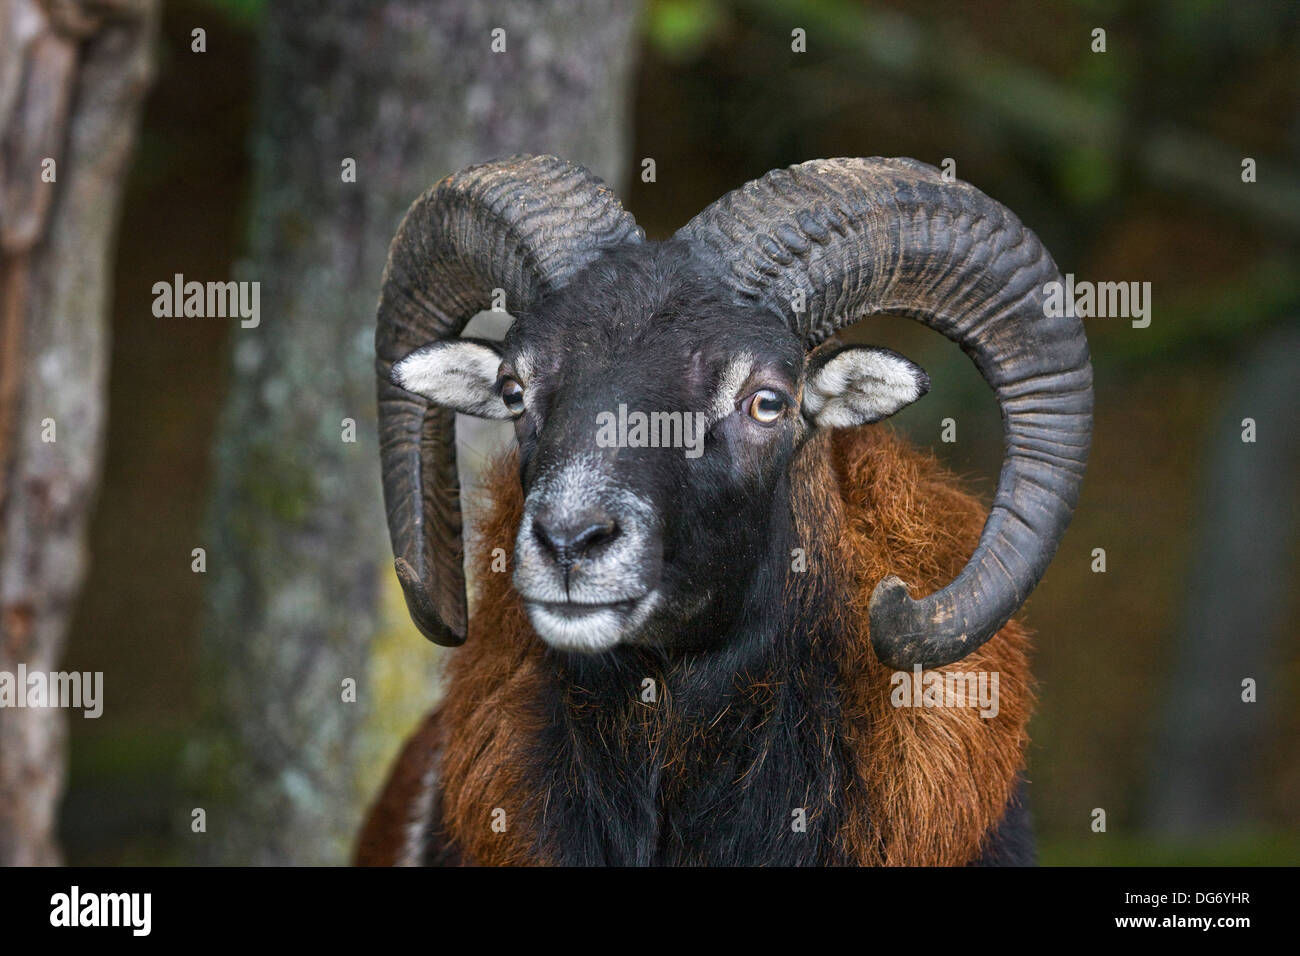 Mouflon (Ovis gmelini européenne / Ovis ammon musimon / Ovis orientalis musimon) ram close up Banque D'Images